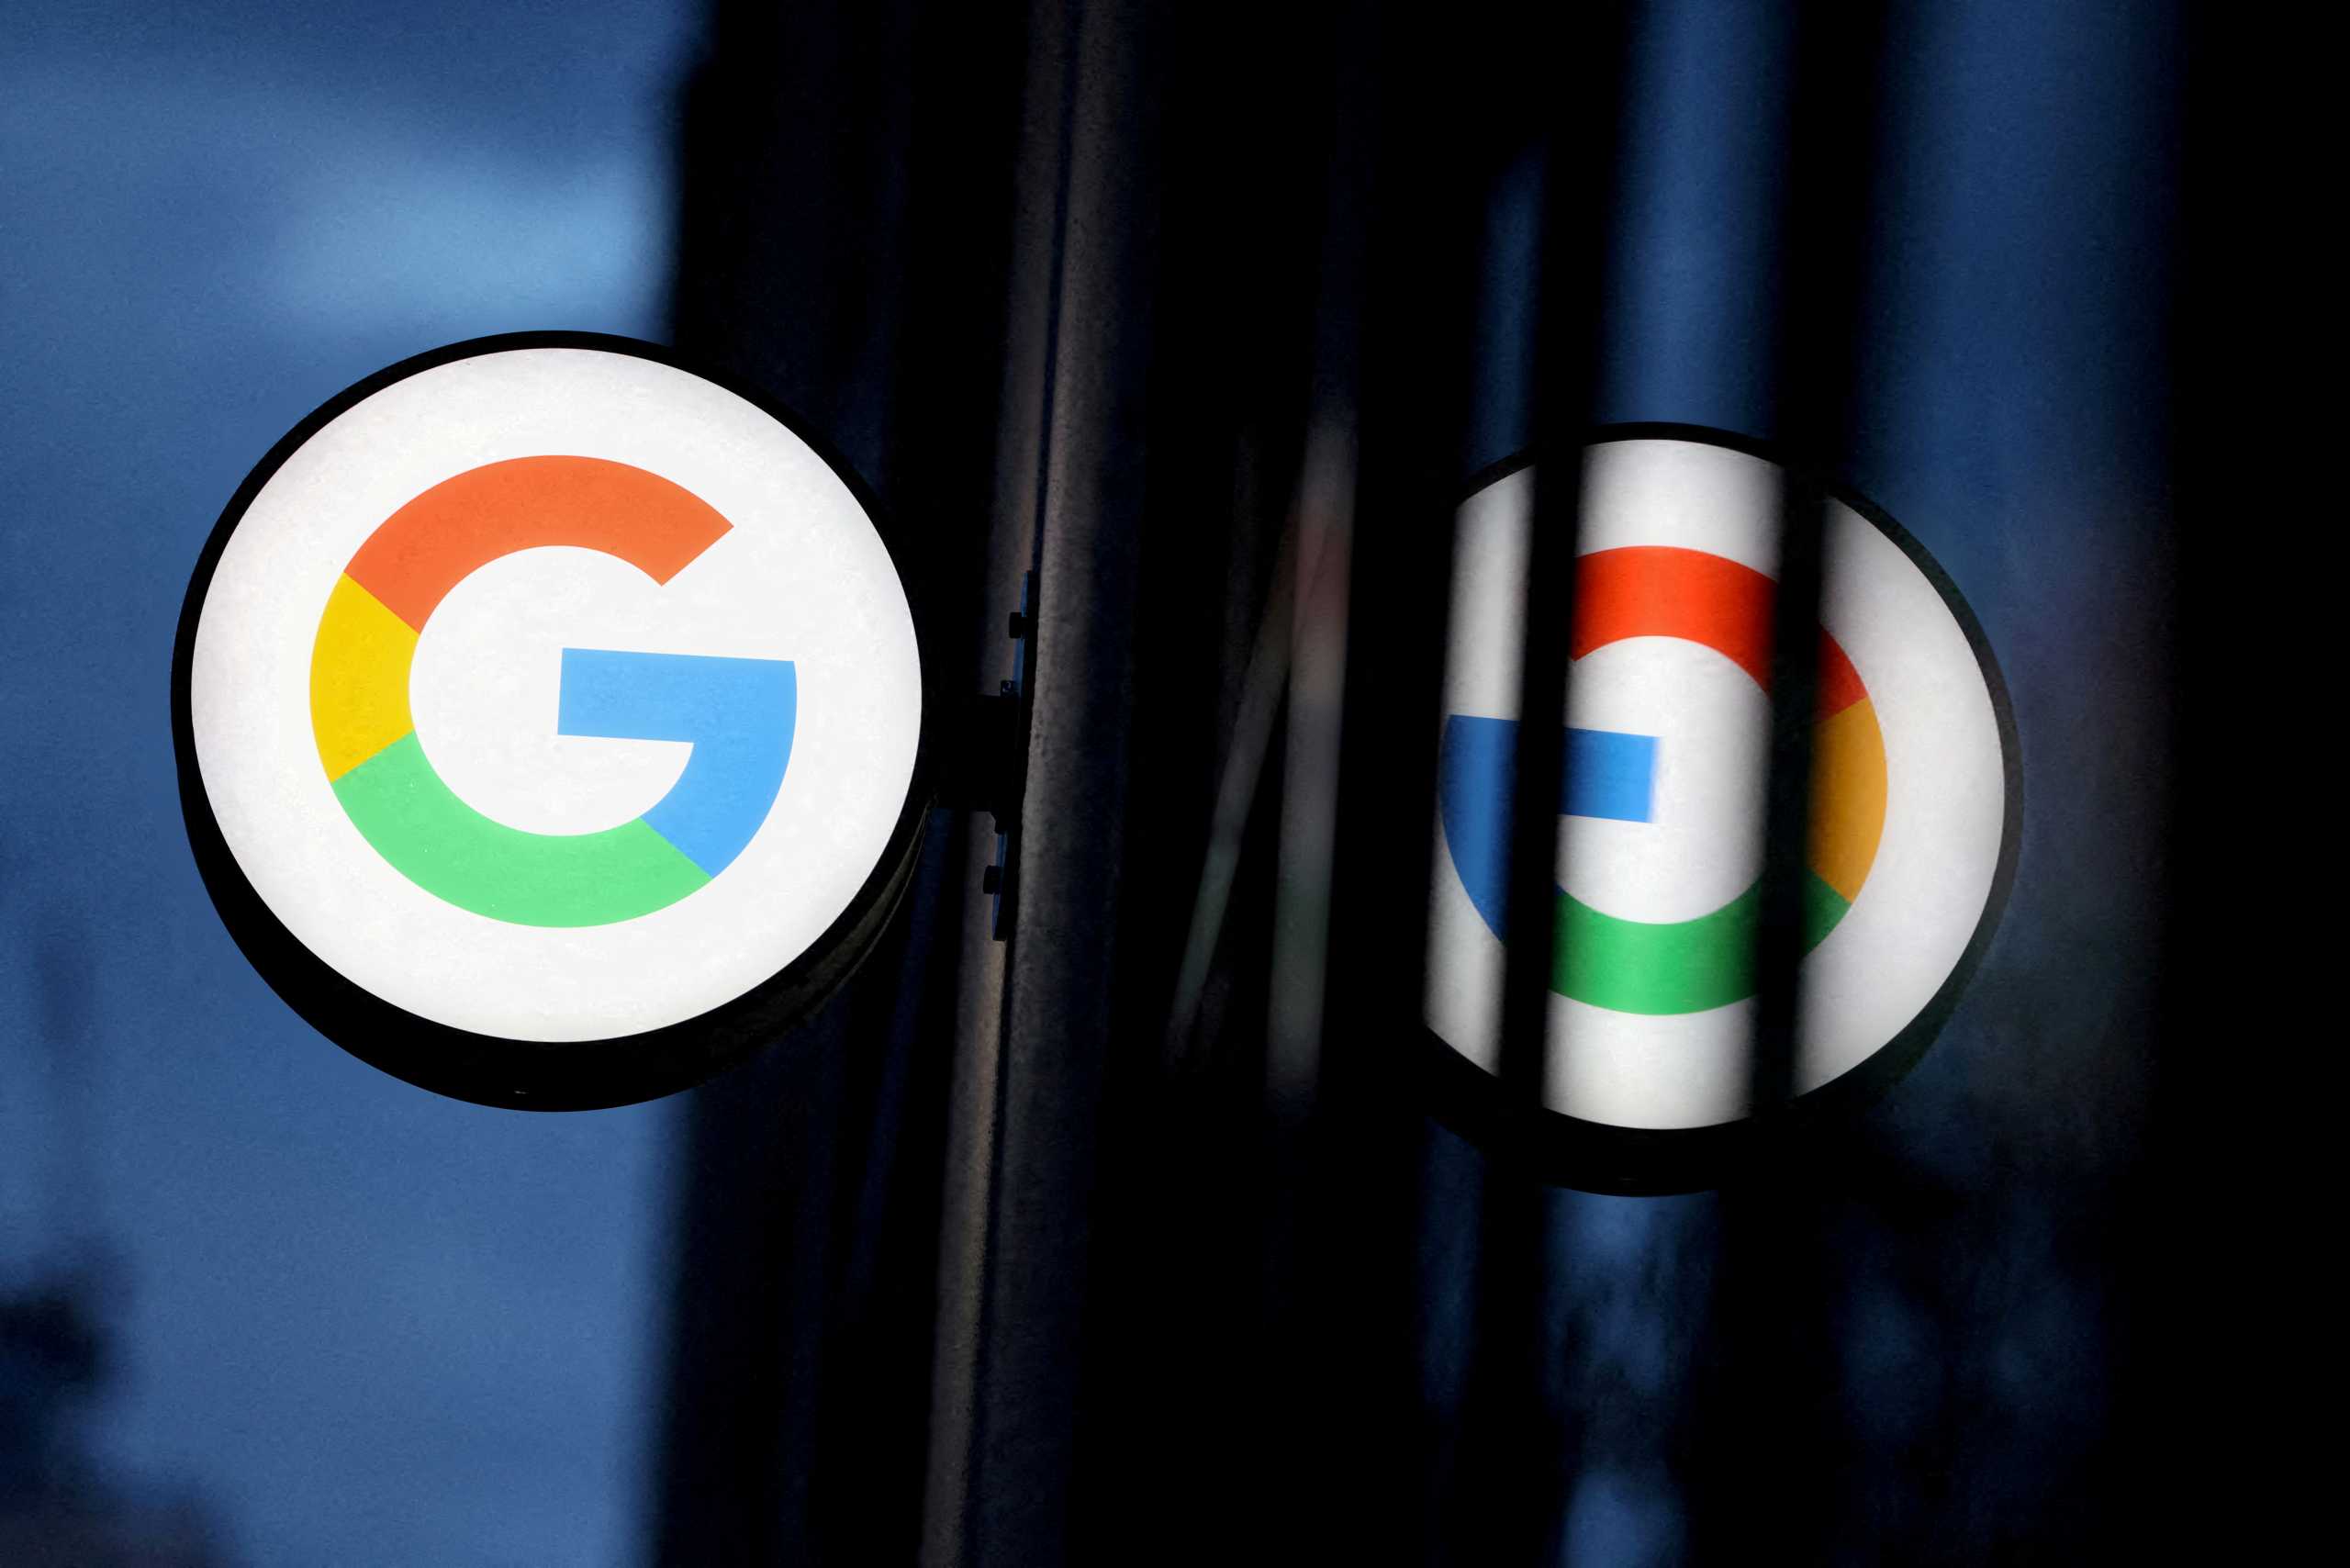 Η Ρωσία κατάσχεσε περίπου 120 εκατ. δολάρια από τον λογαριασμό της Google